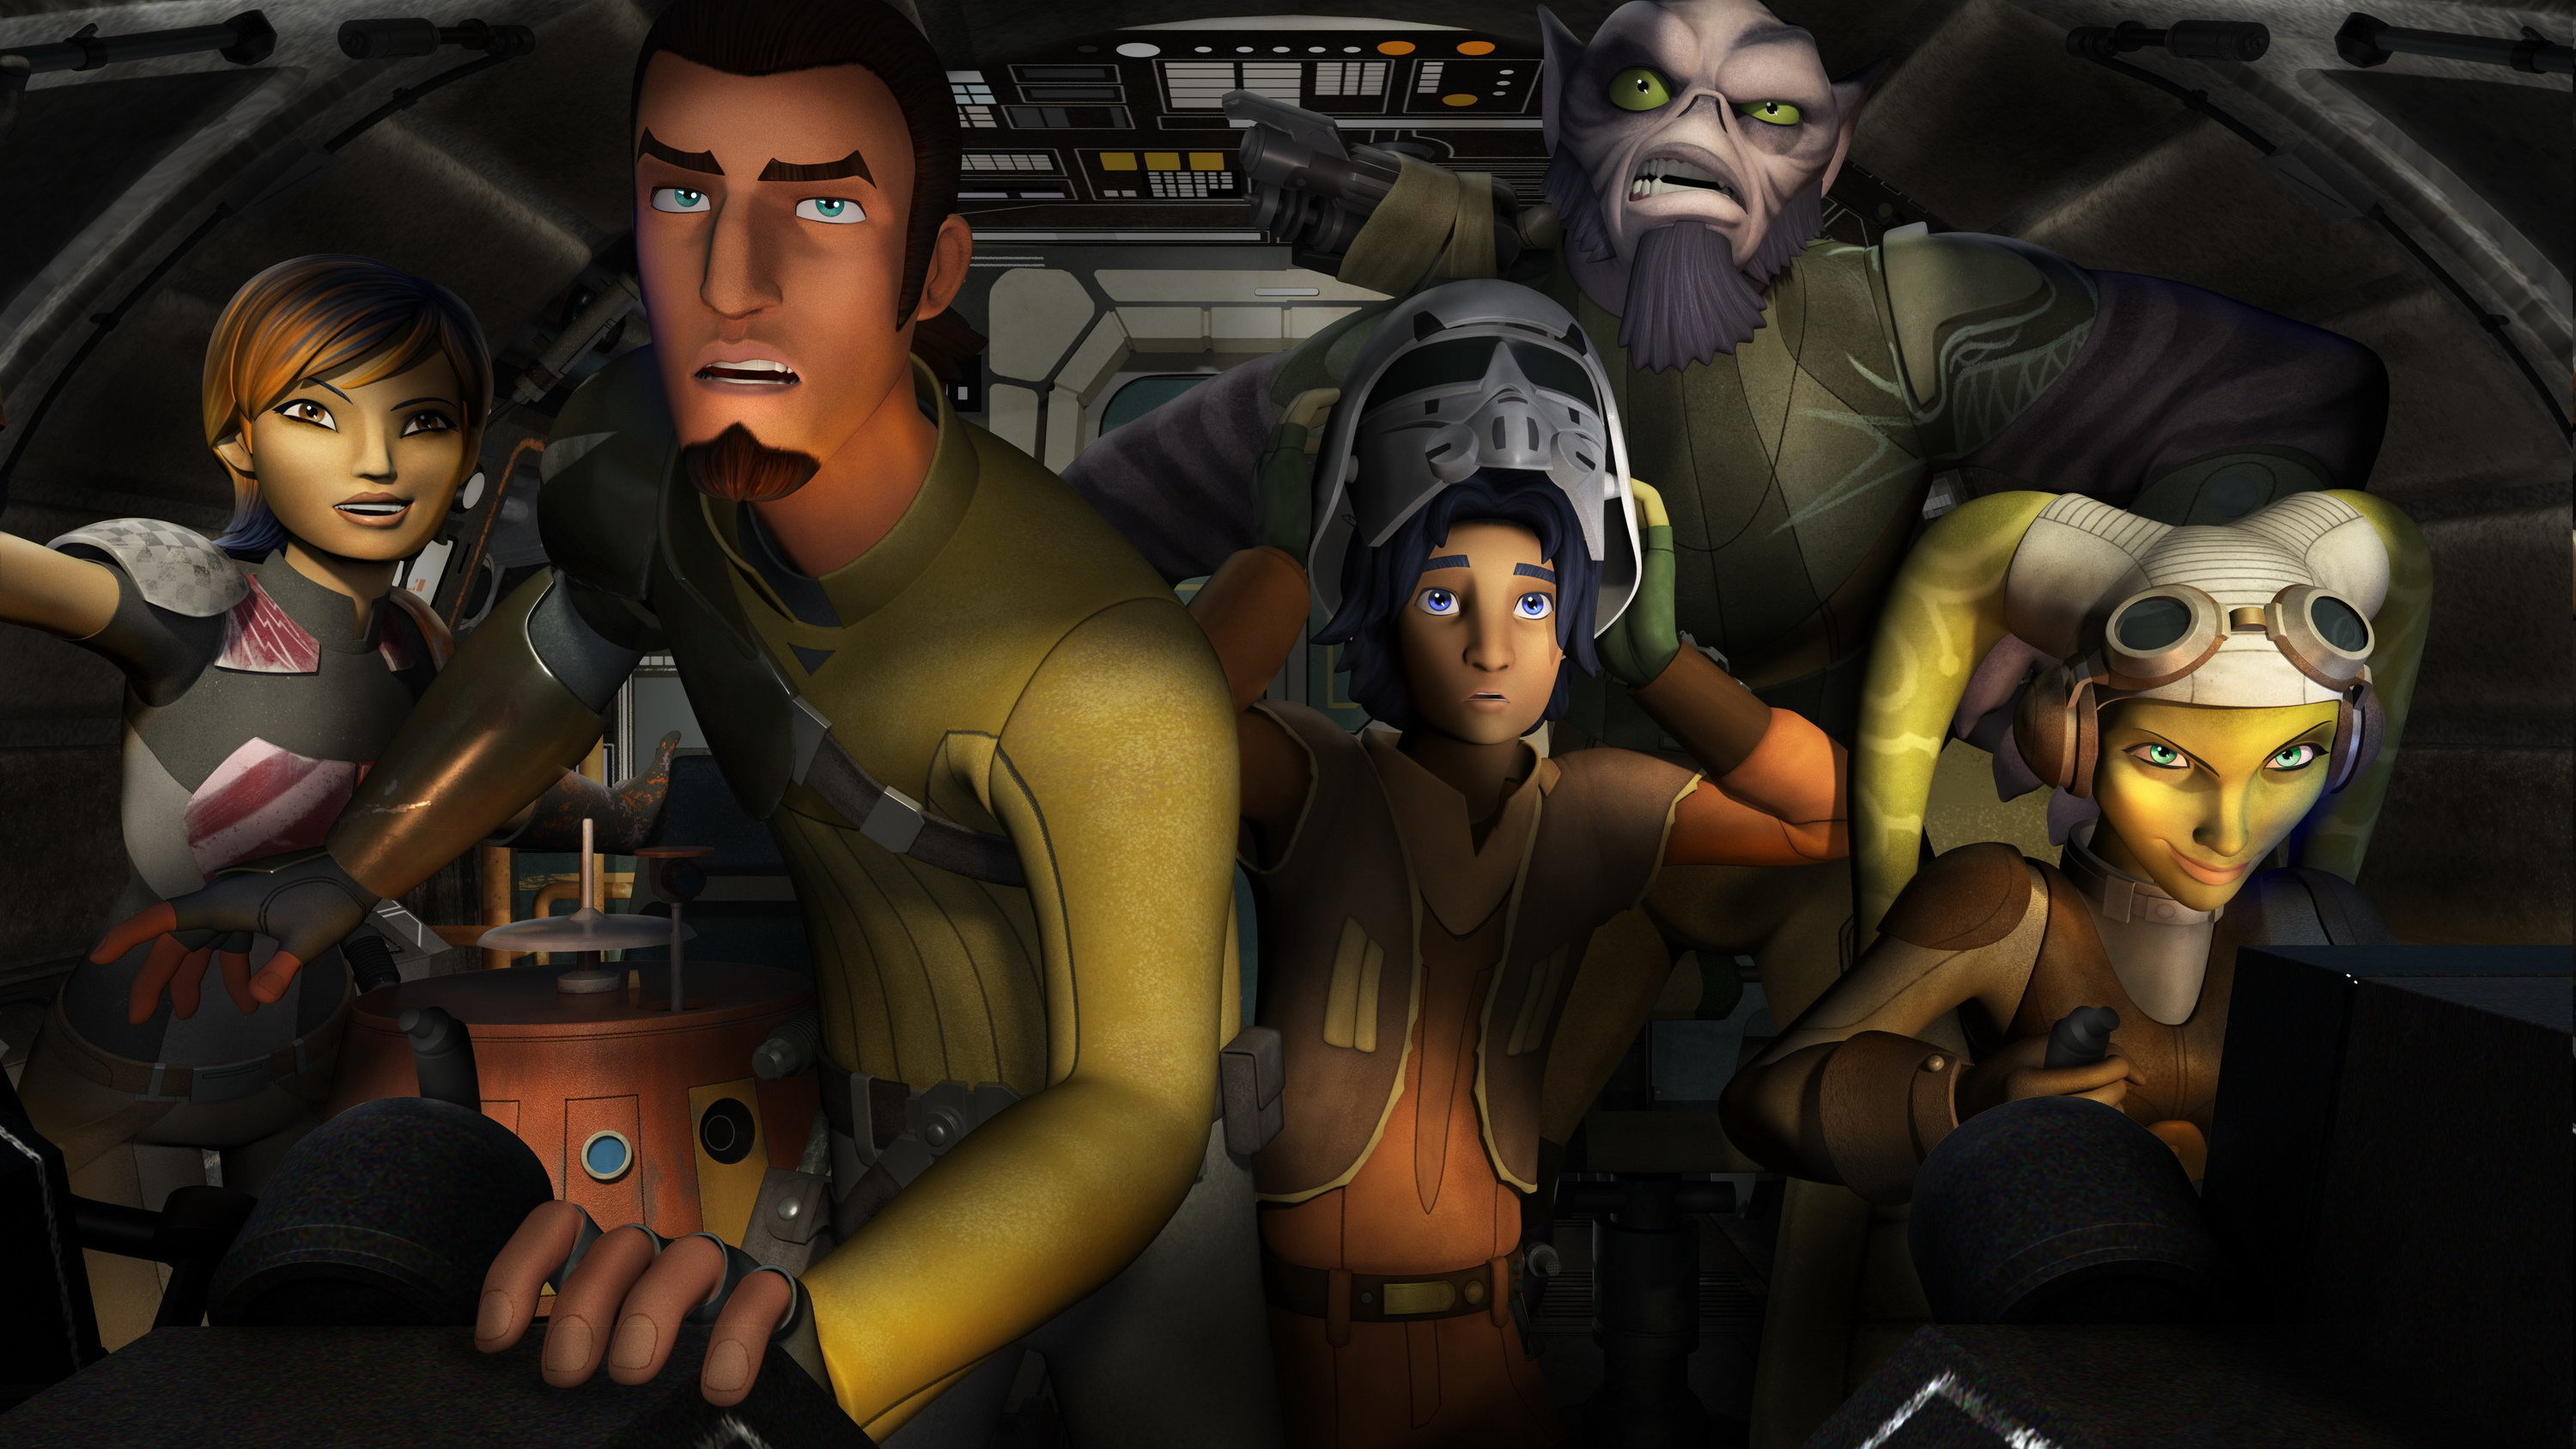 SDCC 2014: "The Heroes of Star Wars Rebels" Panel - Liveblog